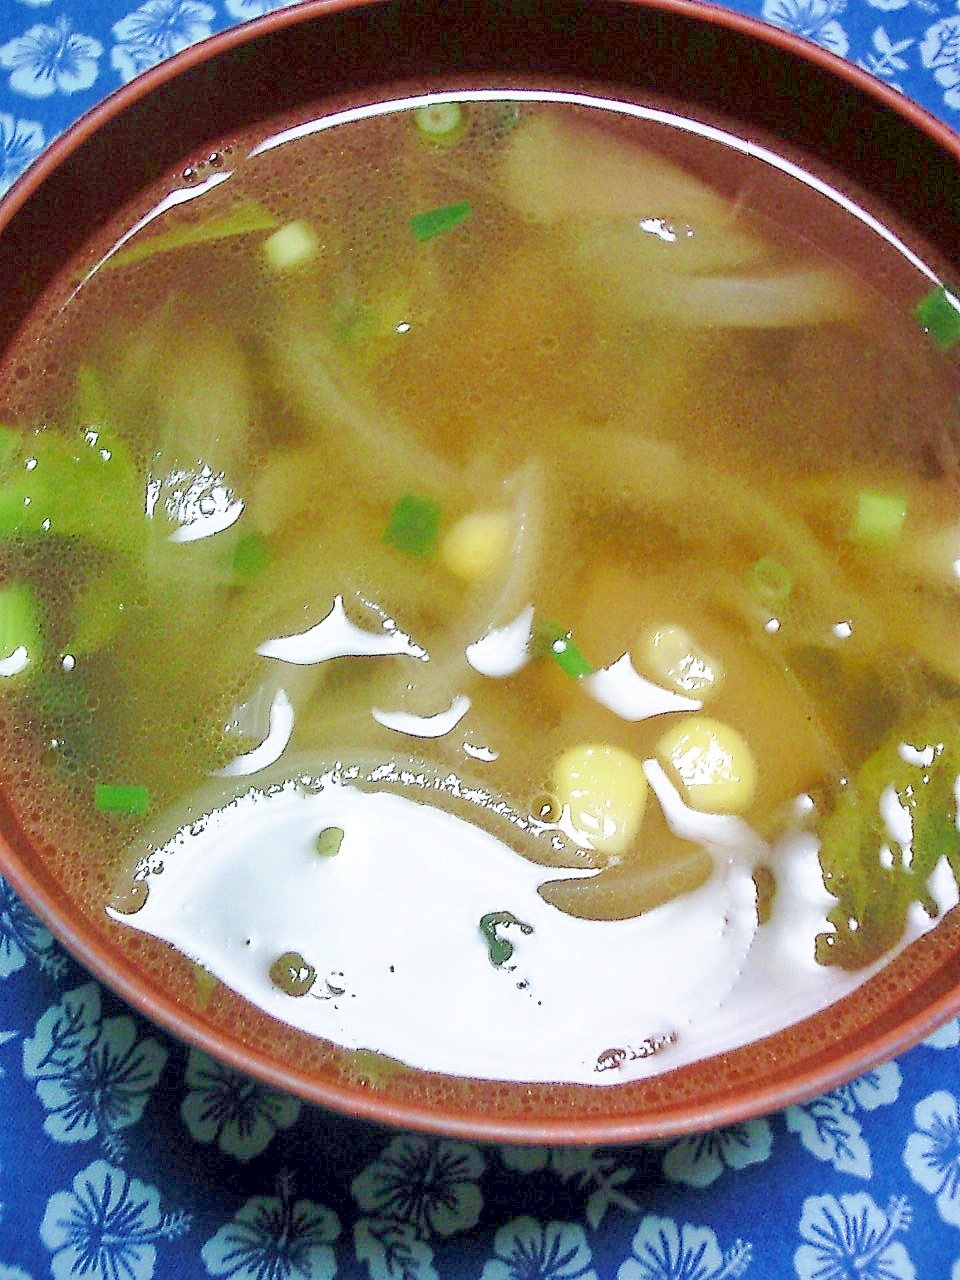 玉ねぎ、コーン、ザア菜、わさび菜の中華風スープ